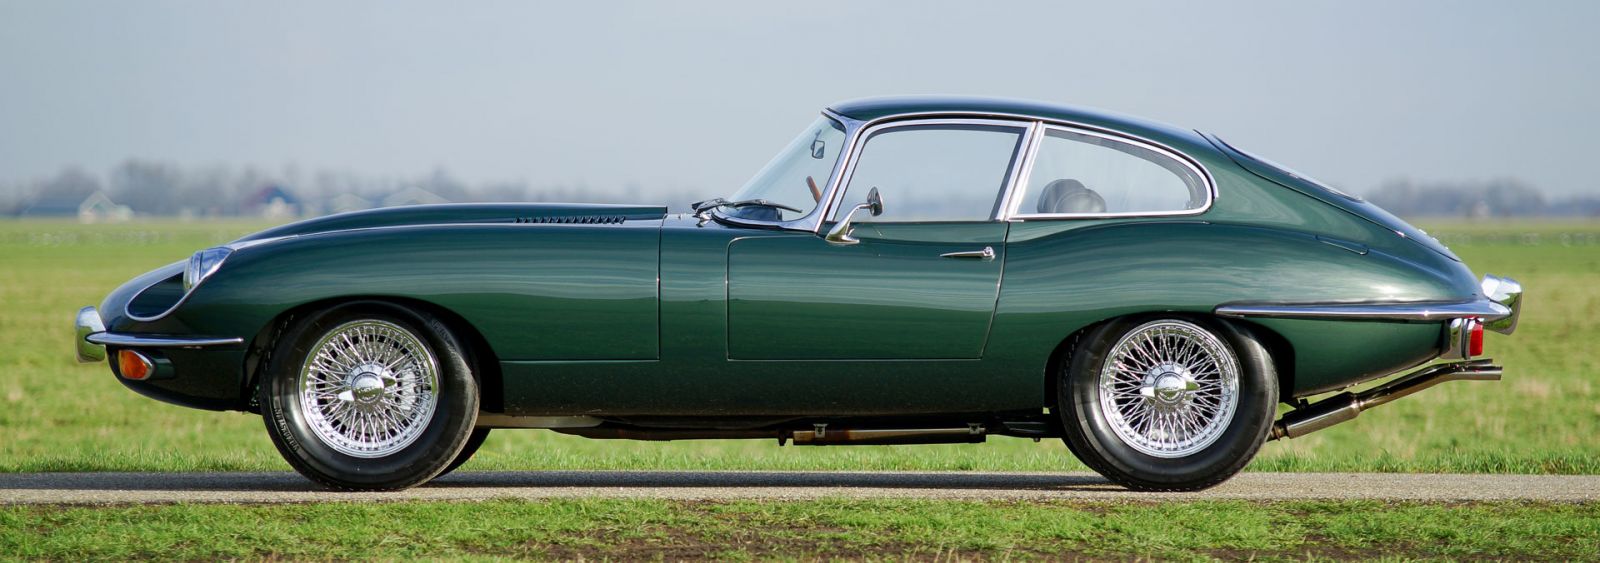 jaguar-e-type-xk-e-42l-s-2-fhc-coupe-british-racing-green-metallic-02-34e3e03a.jpg